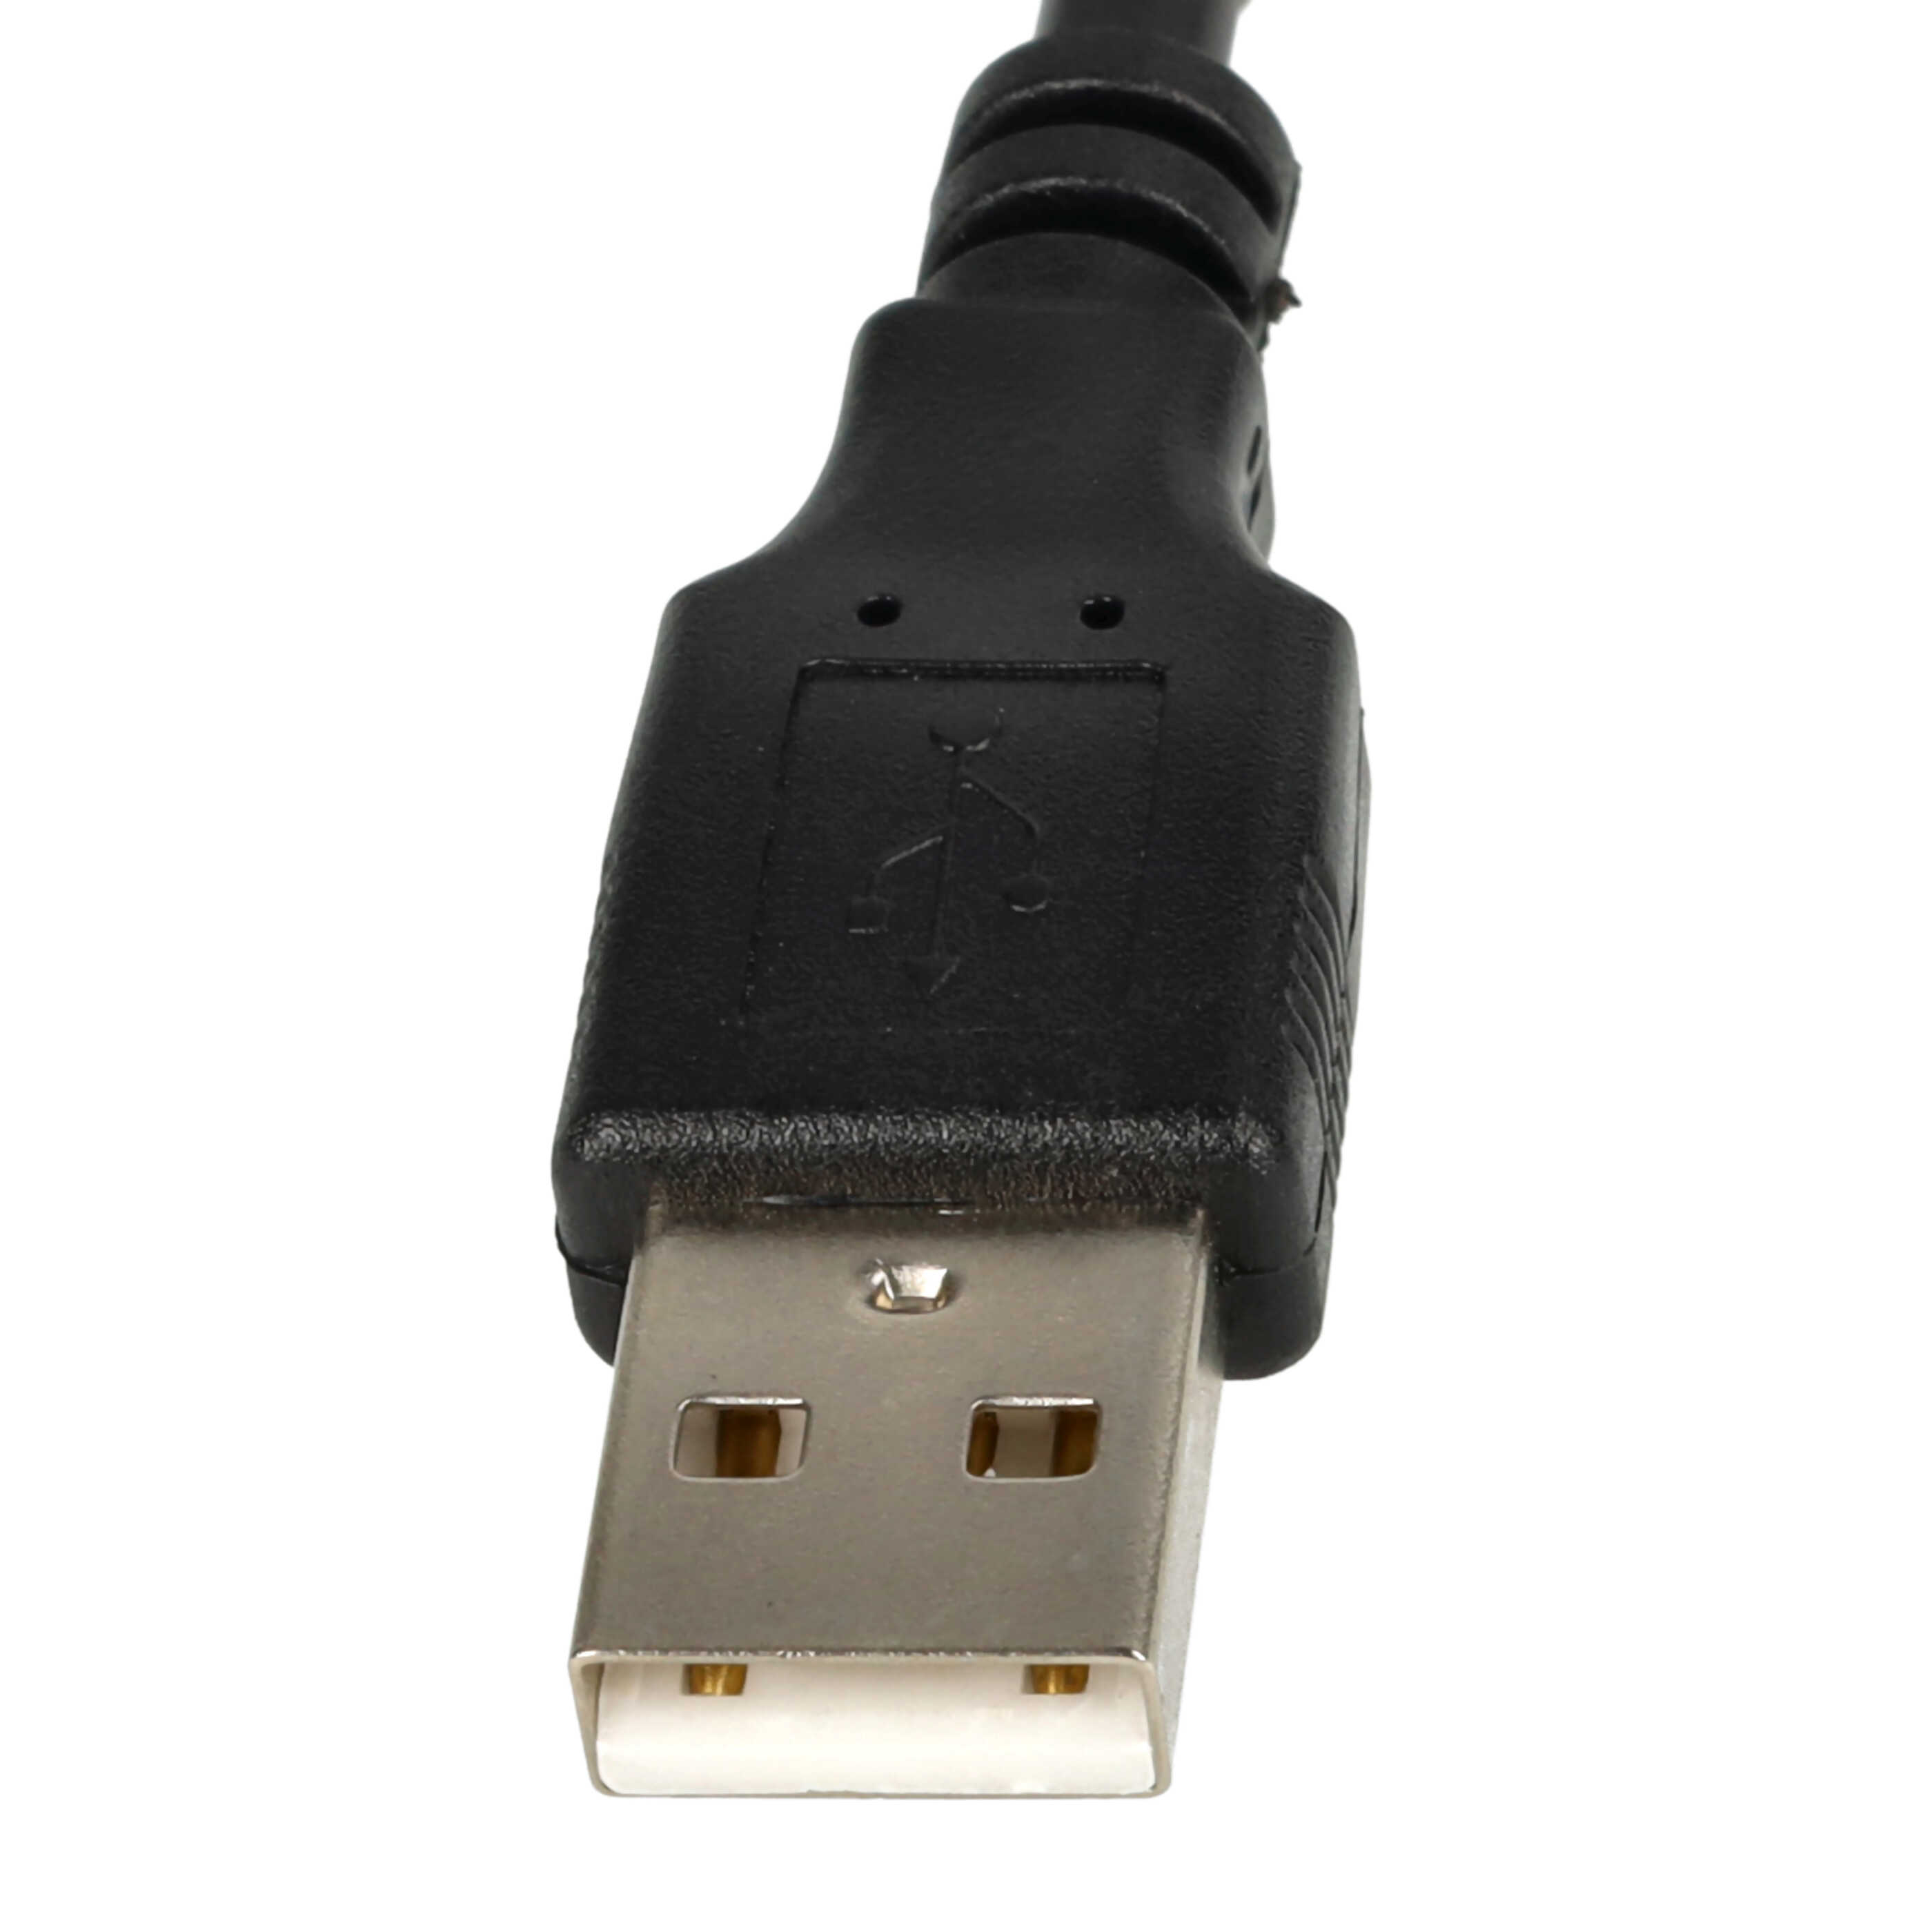 Kabel cinch USB do odtwarzaczy HDD, wieży stereo - USB A na 3 wtyki cinch, 1,4 m